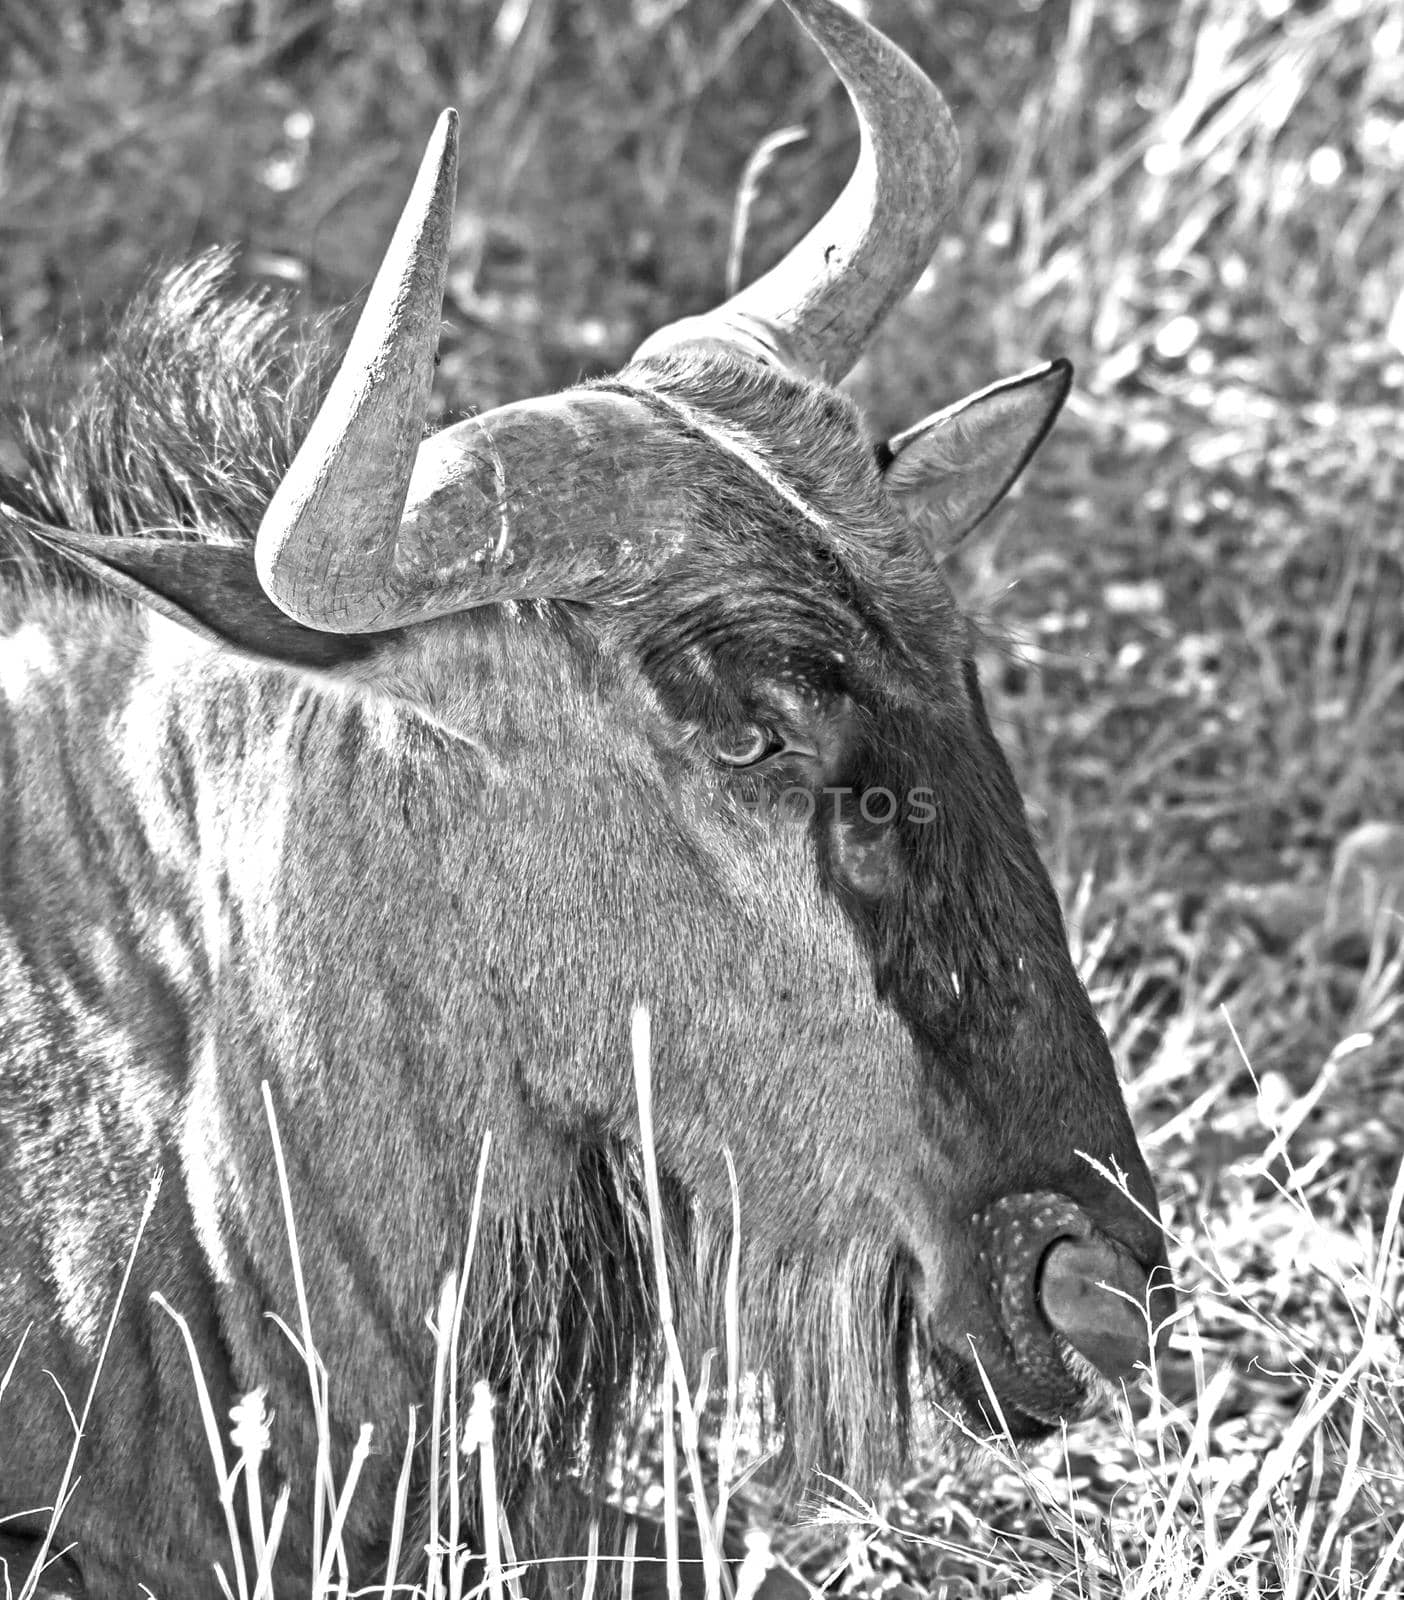 Blue Wildebeest Connochaetes taurinus 13544 by kobus_peche